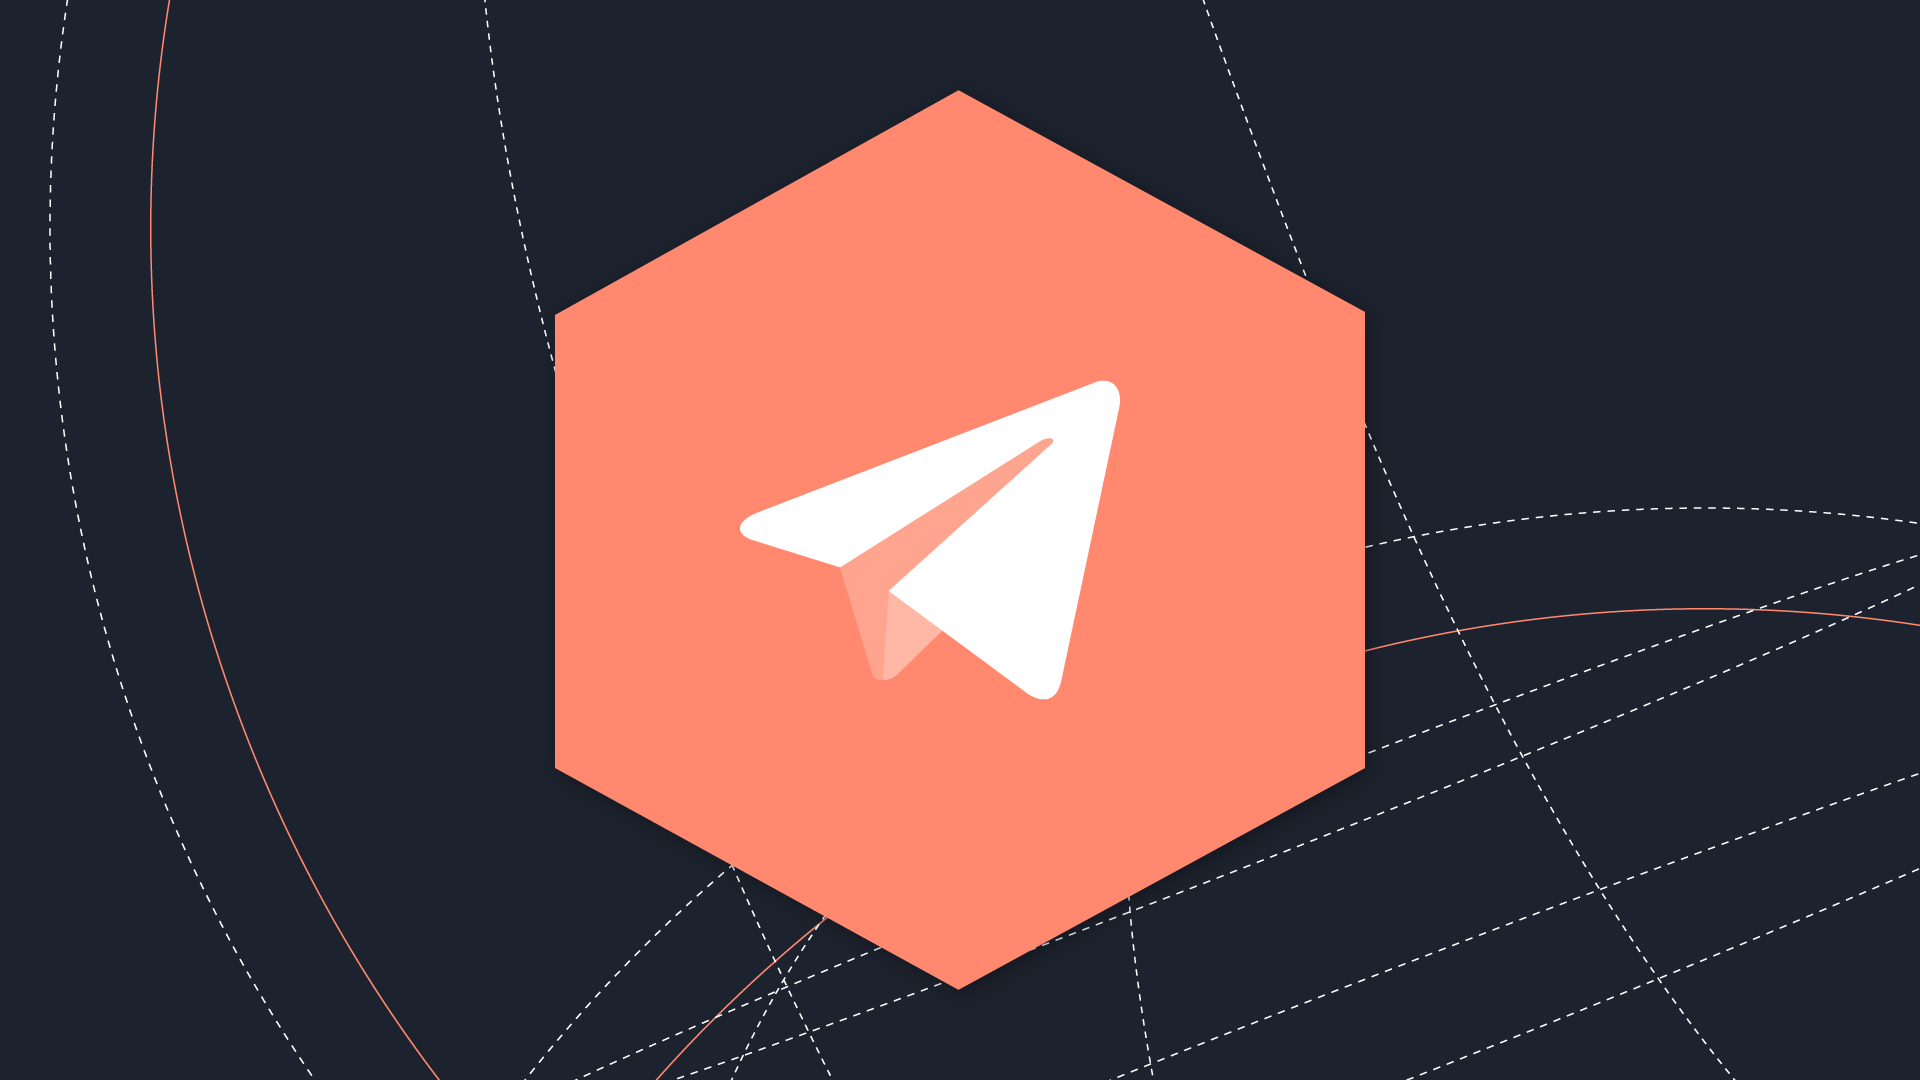 Come creare un tipbot su Telegram per token EOS